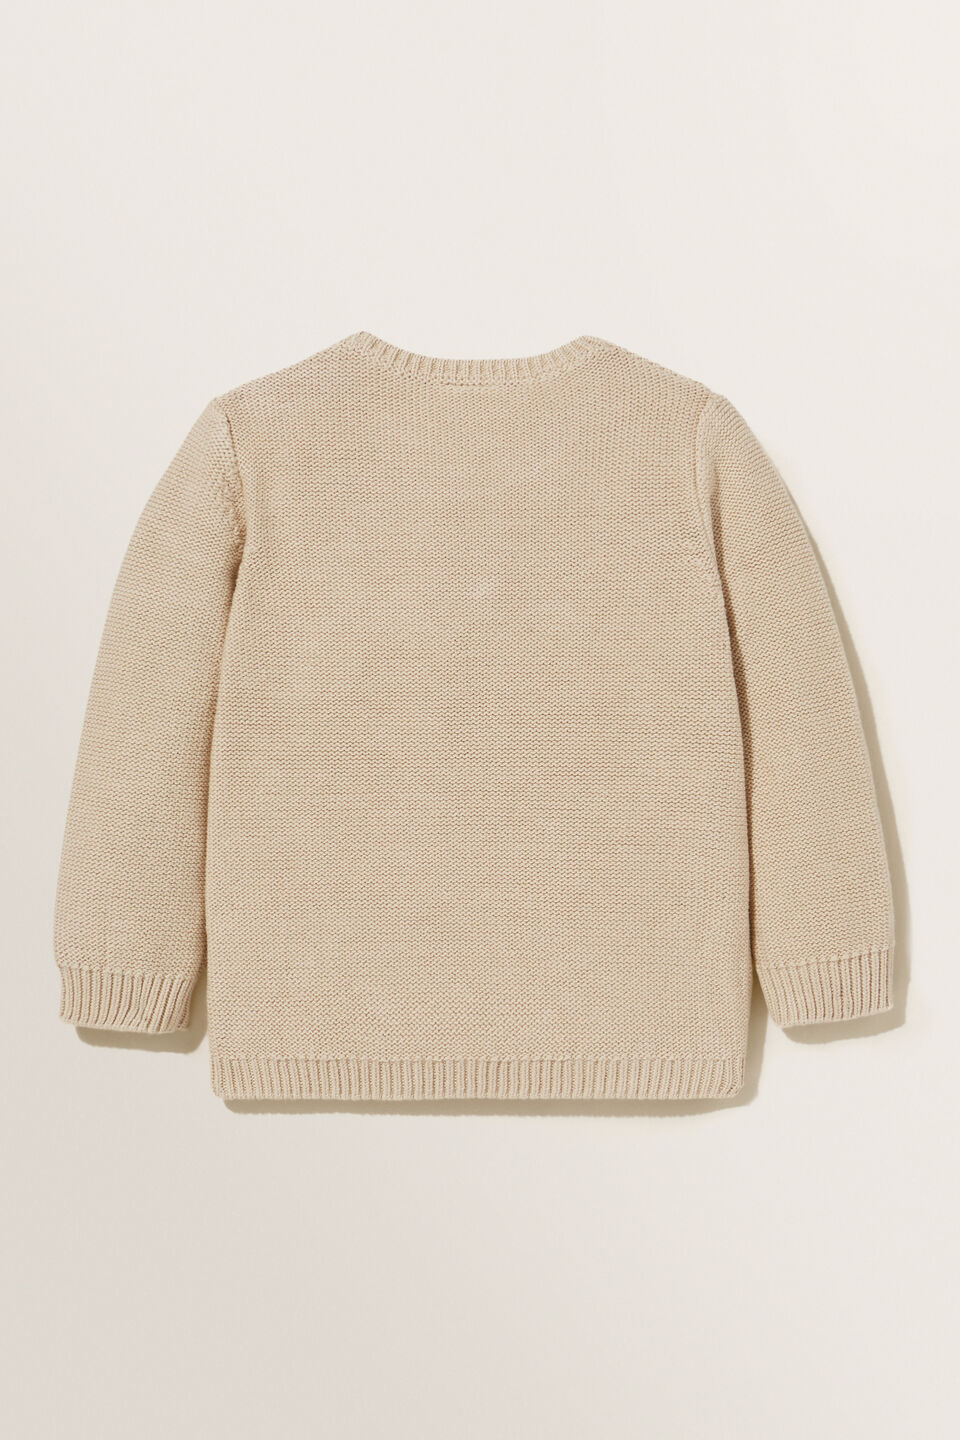 Buttercup Knit Sweater  Chai